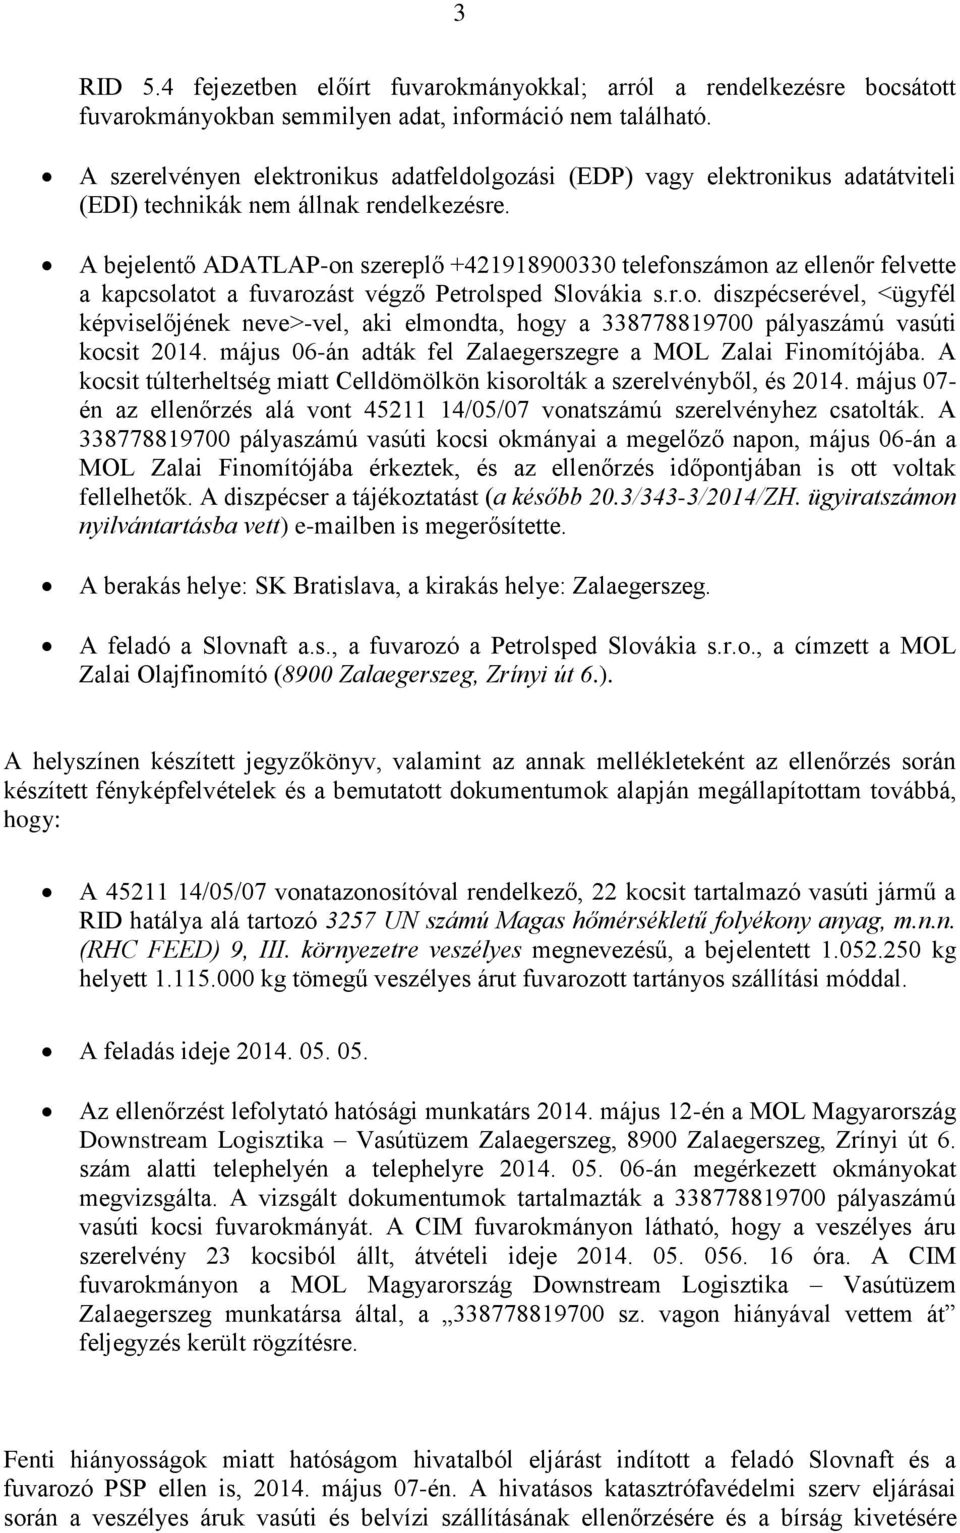 A bejelentő ADATLAP-on szereplő +421918900330 telefonszámon az ellenőr felvette a kapcsolatot a fuvarozást végző Petrolsped Slovákia s.r.o. diszpécserével, <ügyfél képviselőjének neve>-vel, aki elmondta, hogy a 338778819700 pályaszámú vasúti kocsit 2014.